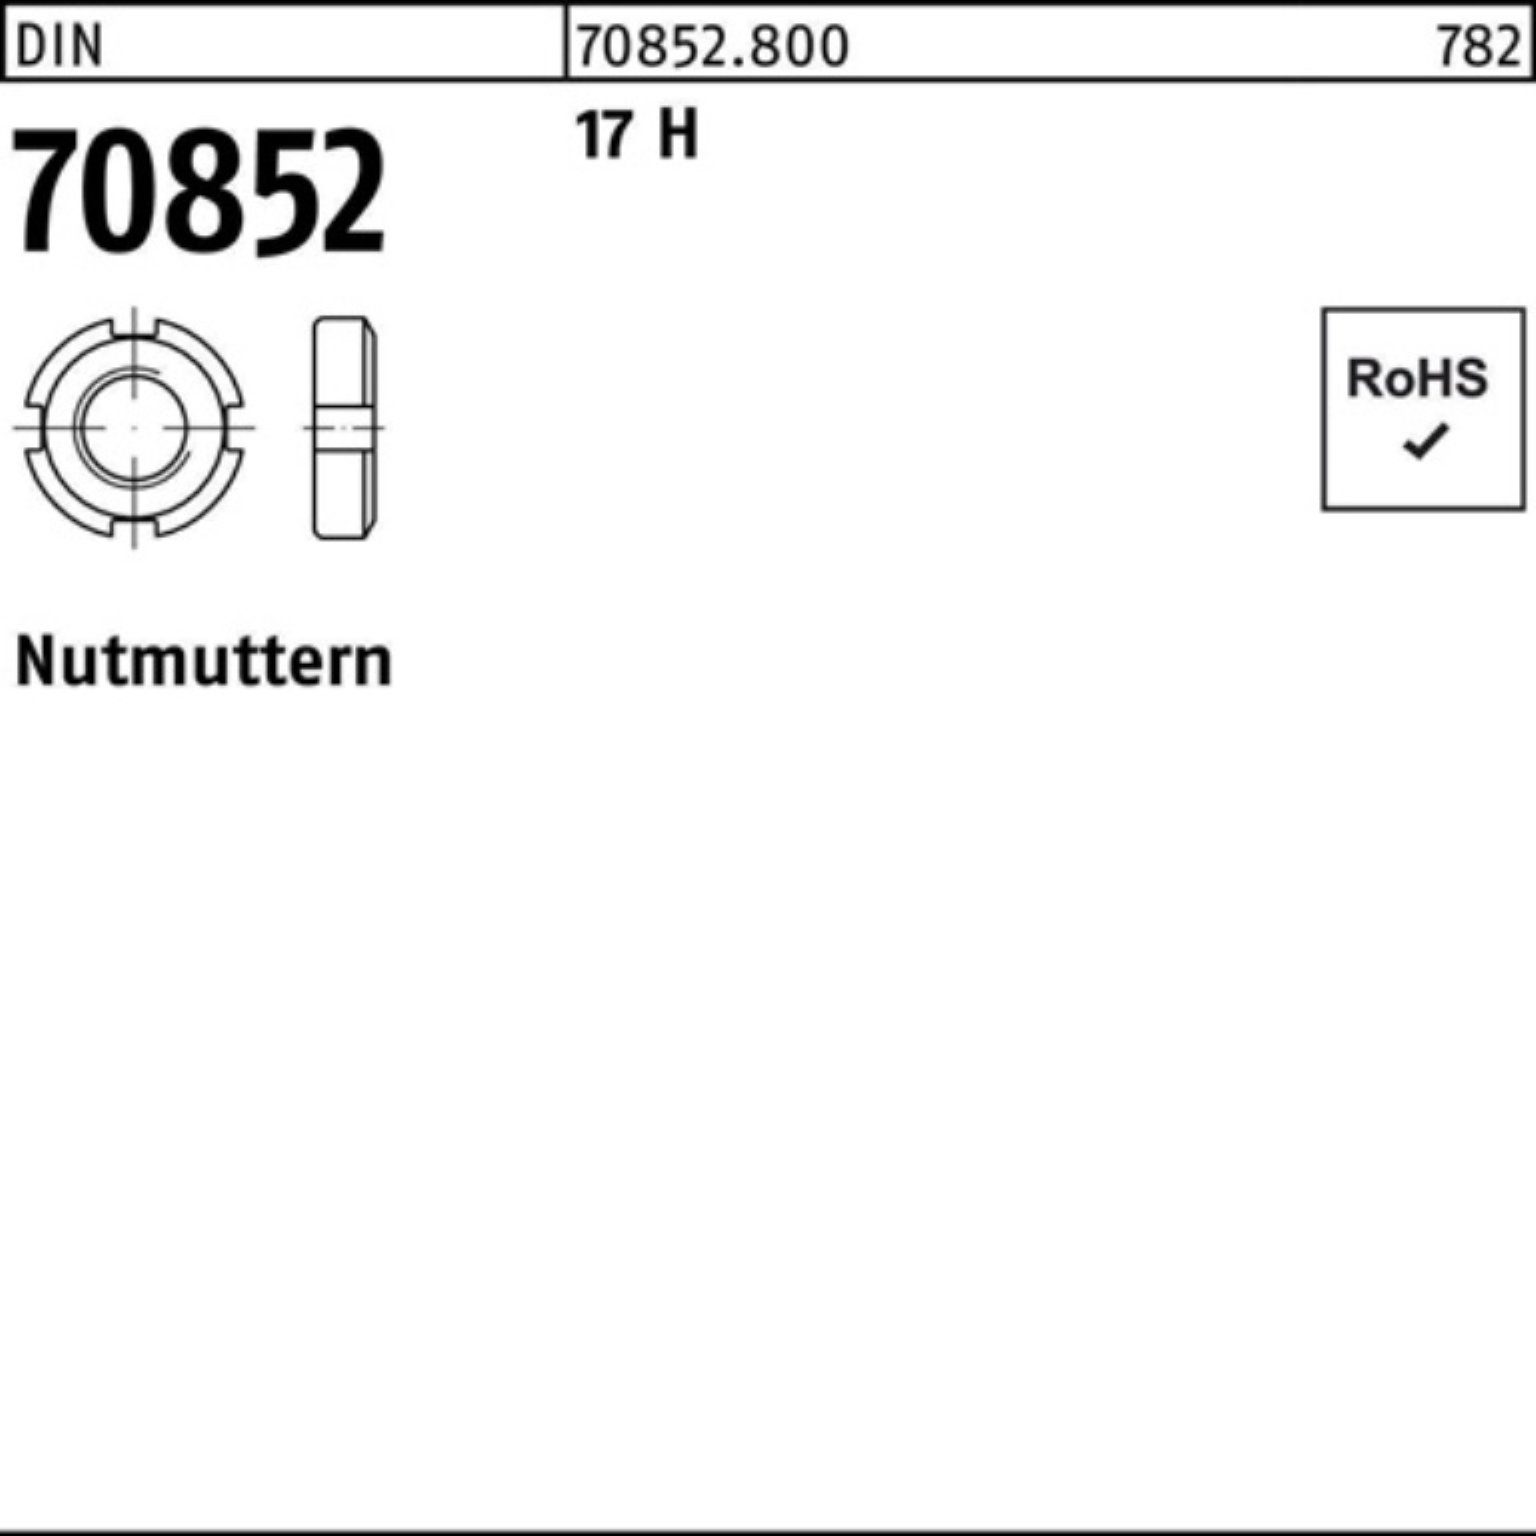 17 17 70852 M95x 1 Nutmutter Nutmutter H Reyher 1,5 70852 N Pack DIN DIN Stück 100er H